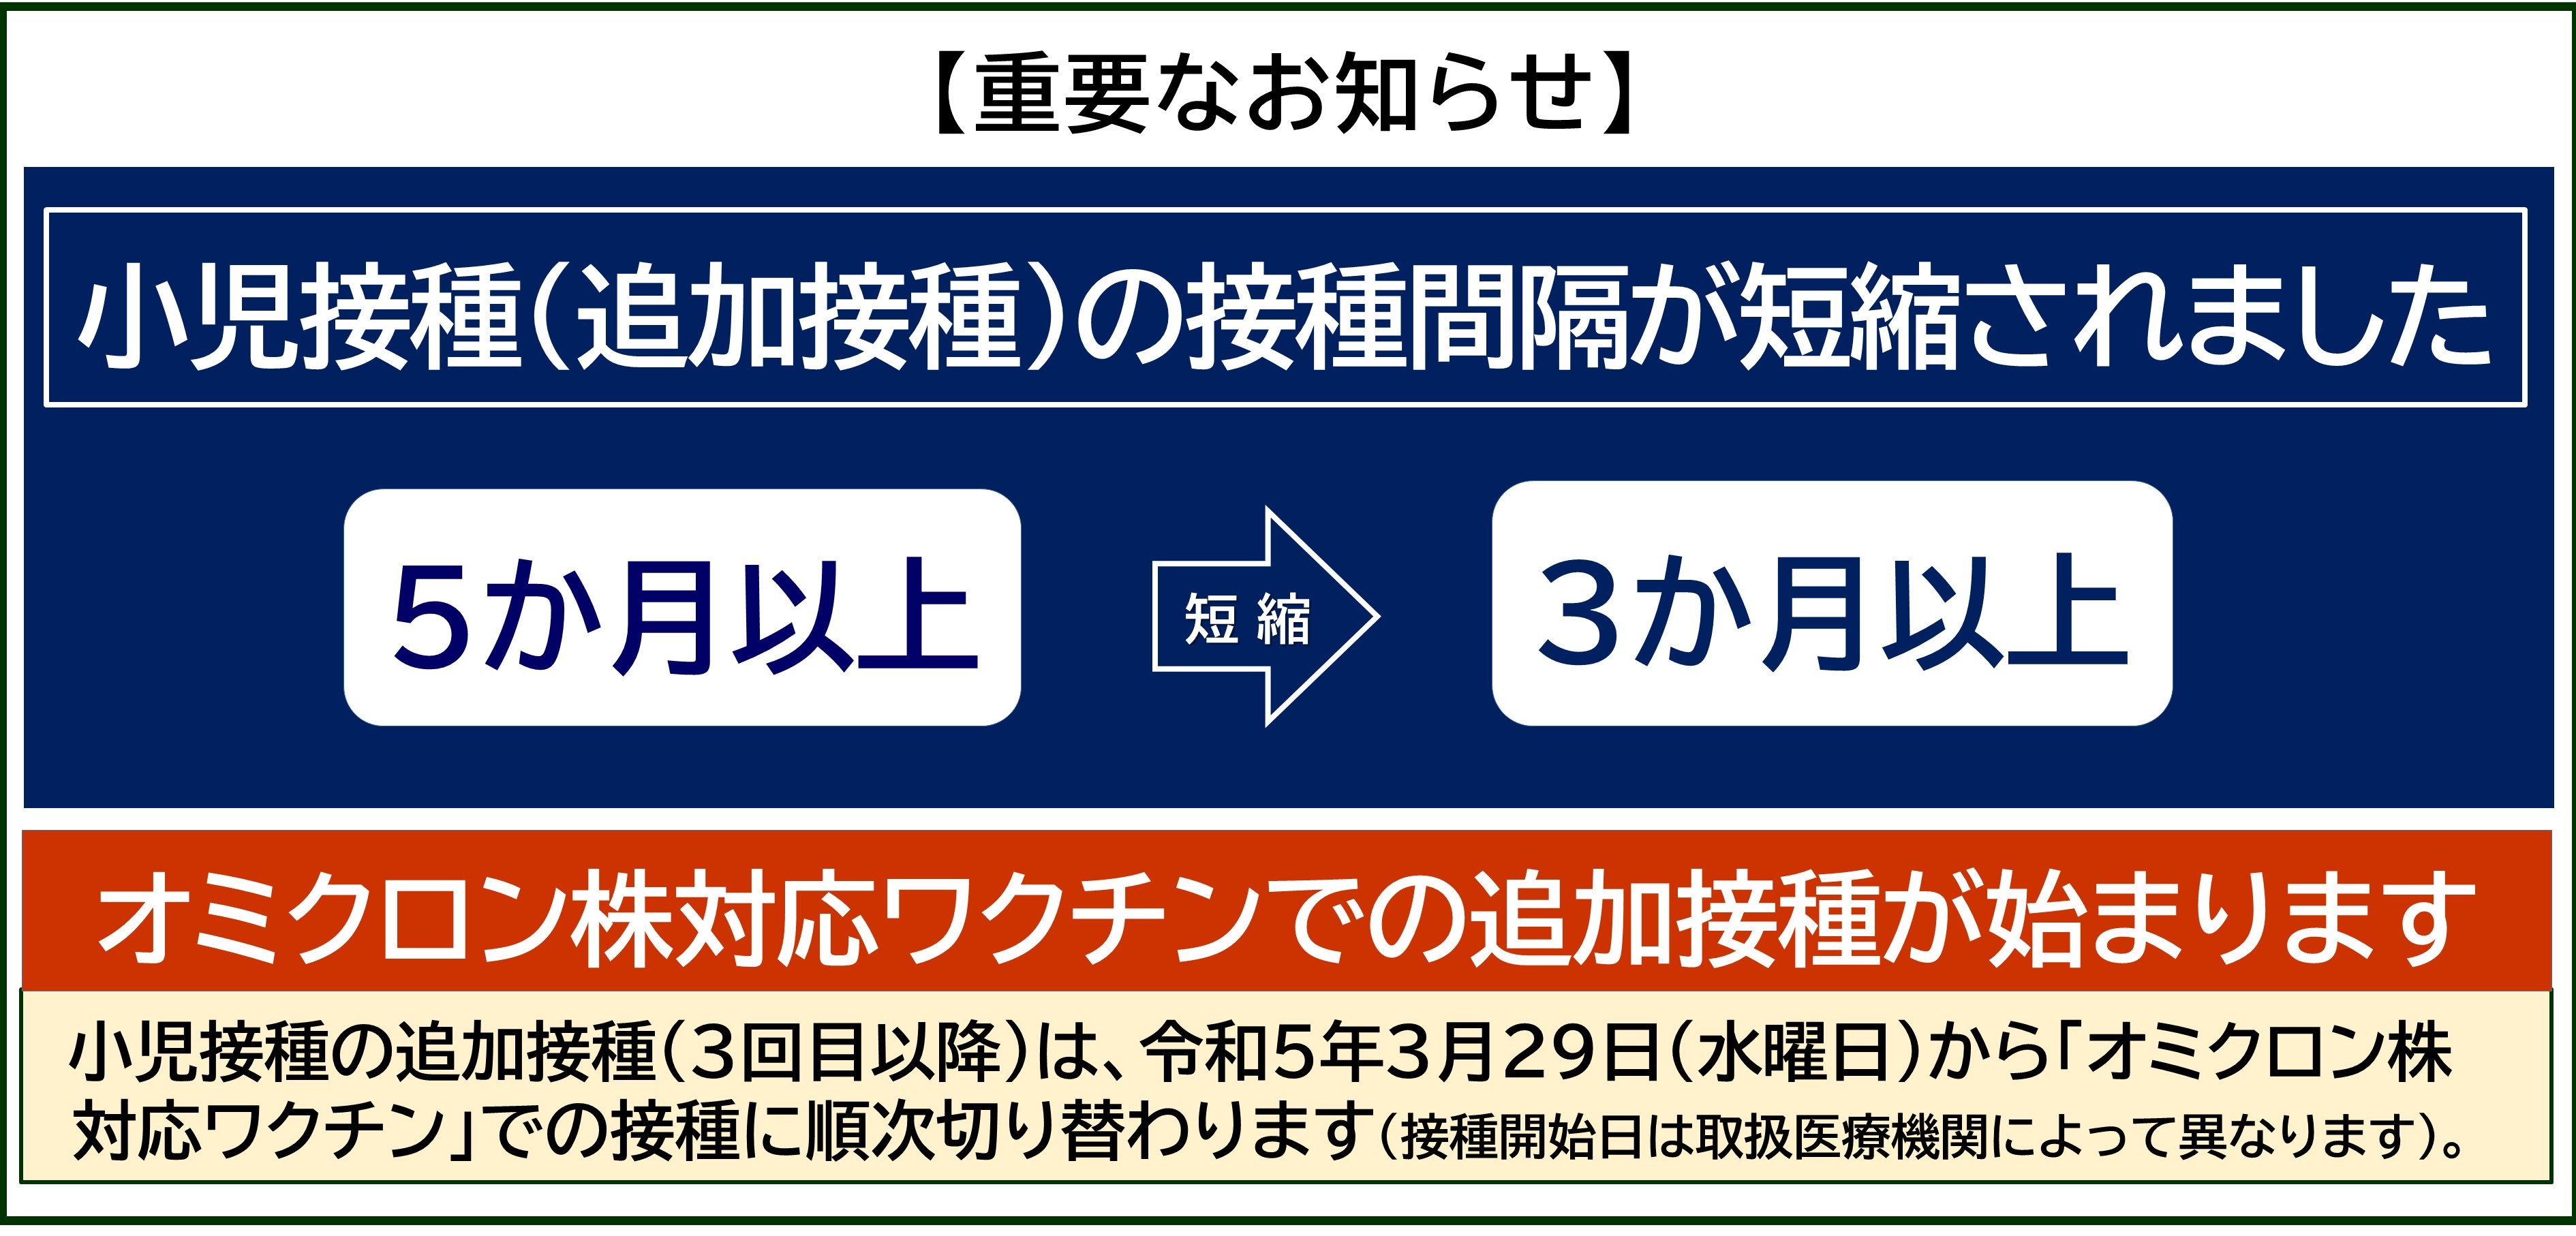 【コロナワクチン】小児接種（オミクロン株対応）が大阪市で始まります